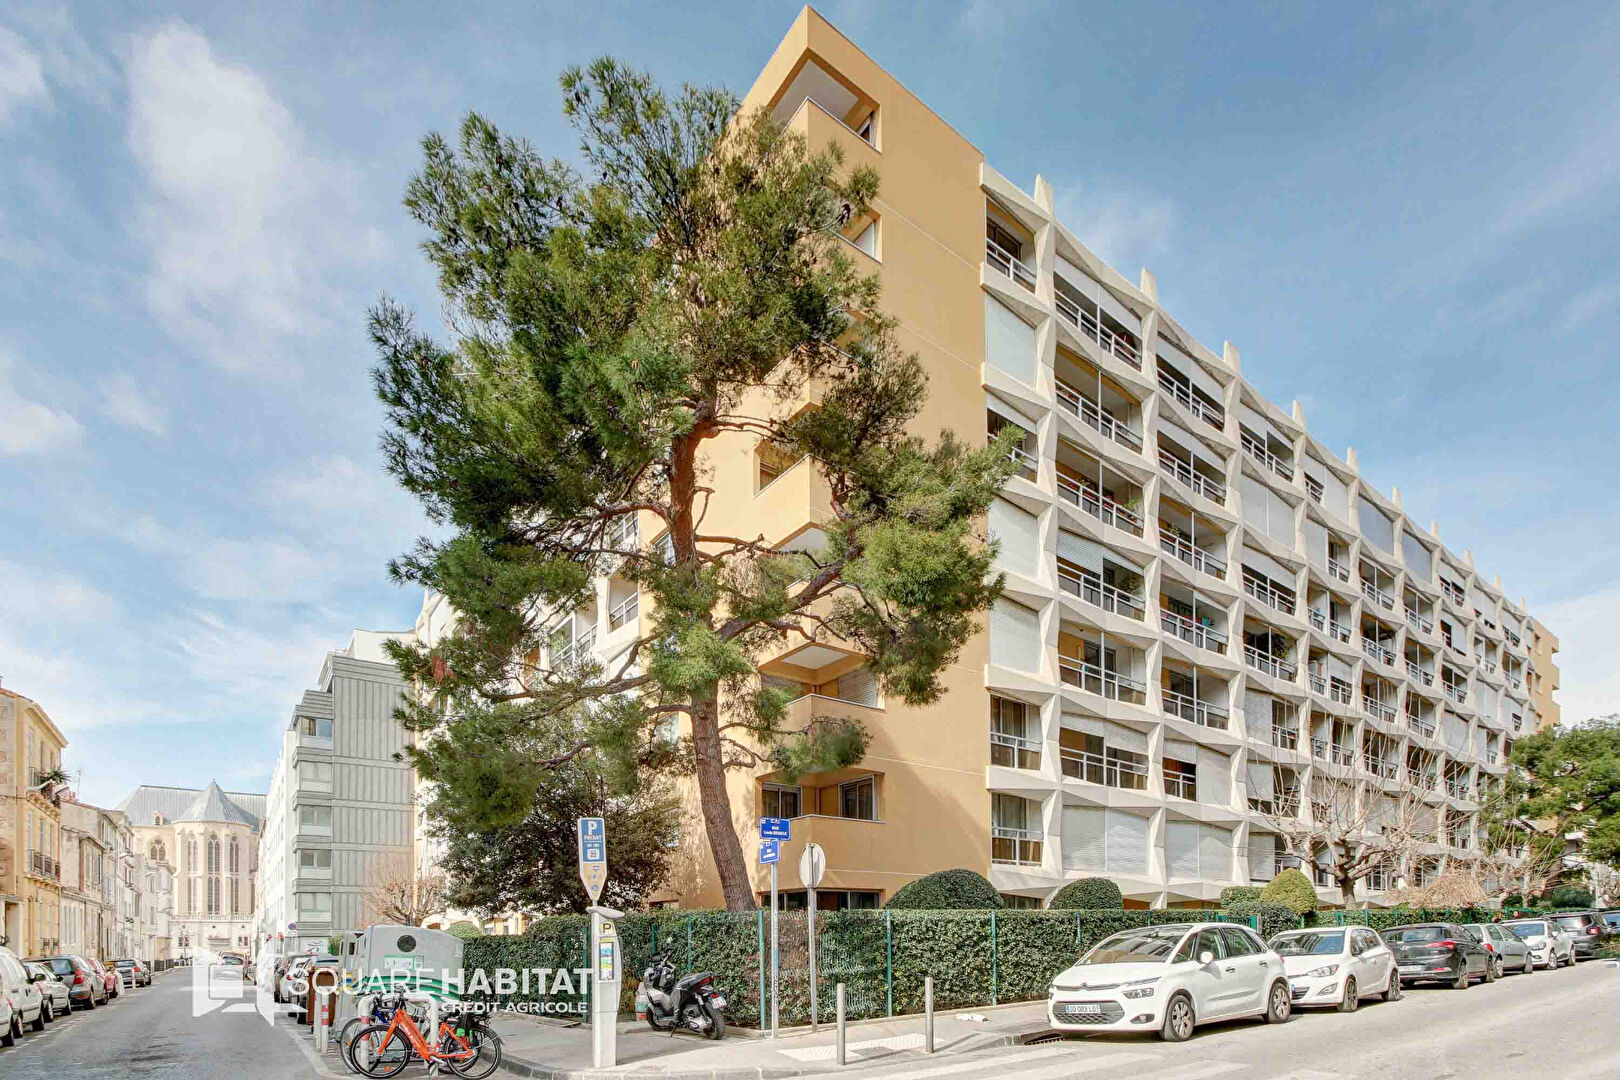 Agence immobilière de Square Habitat Marseille Vieux Port